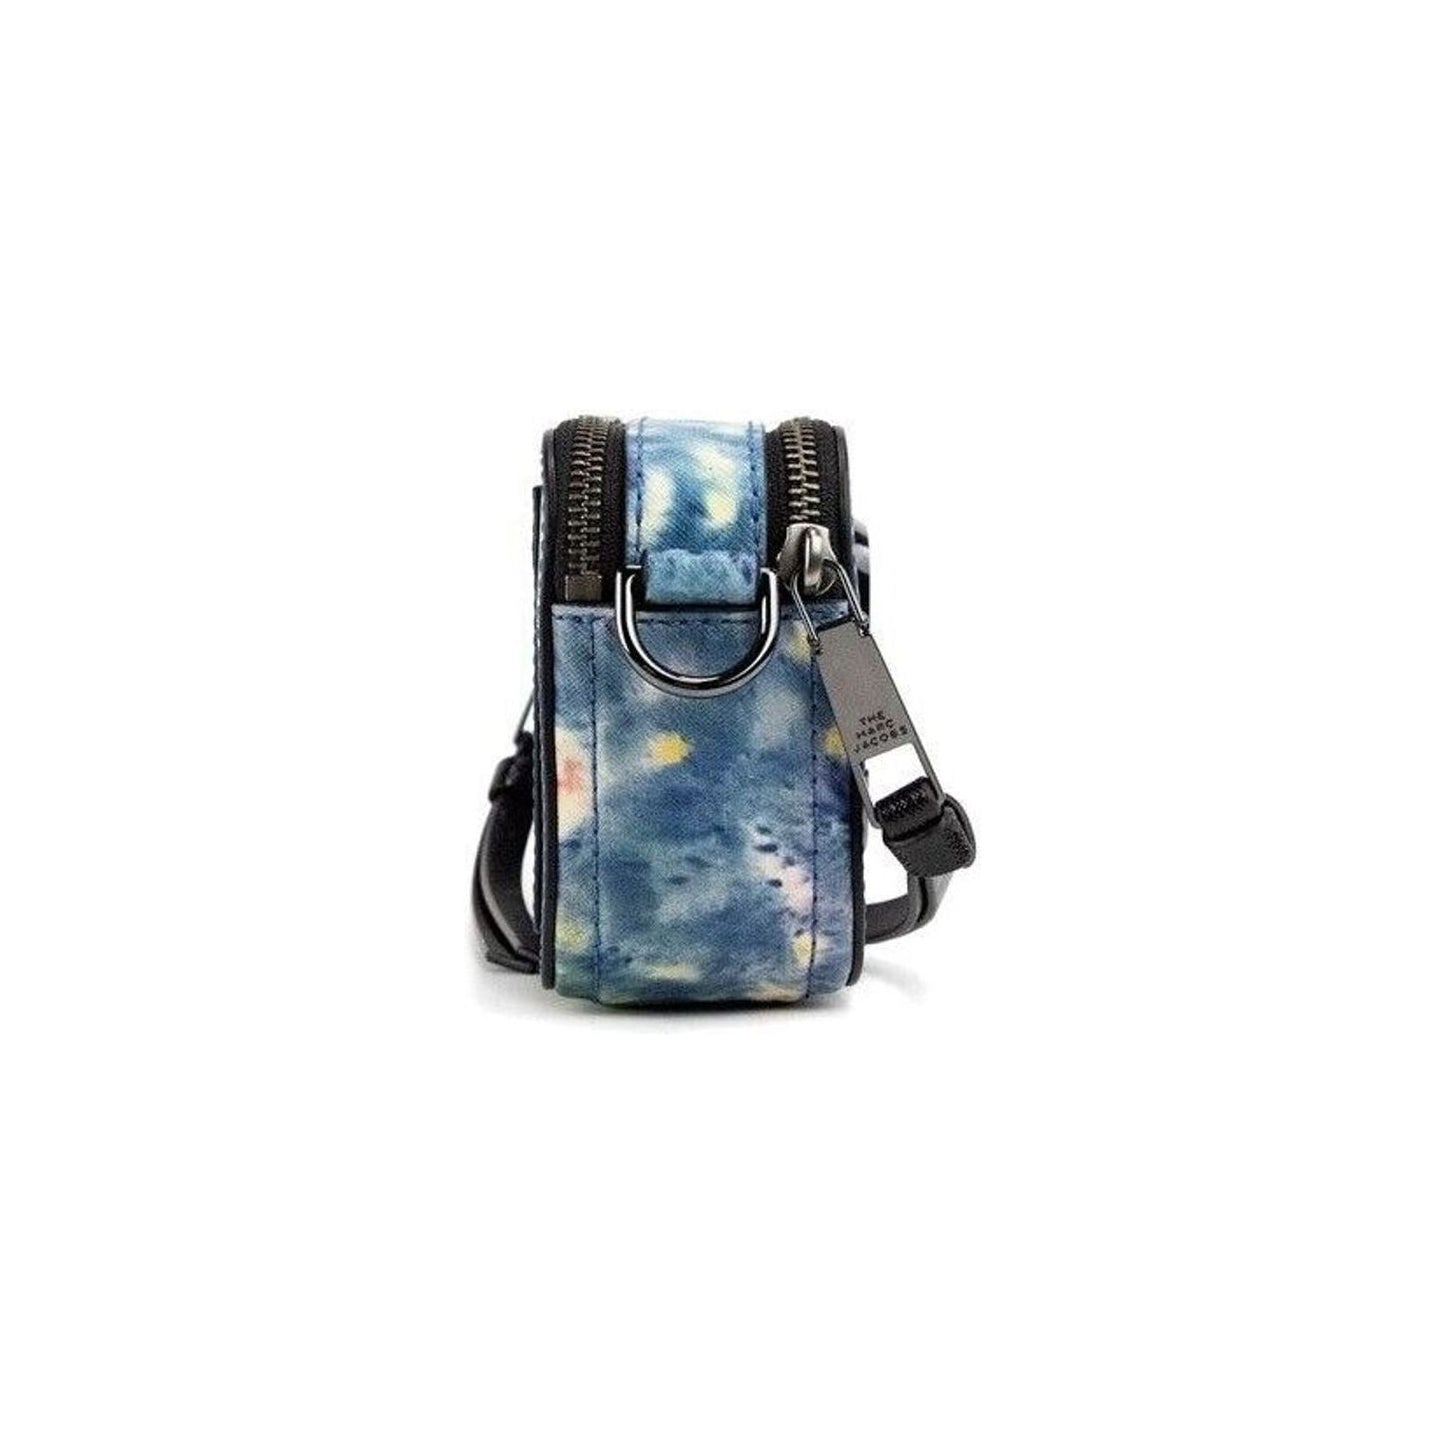 Marc JacobsThe Snapshot bag Watercolor Blue Printed Leather Shoulder Bag PurseMcRichard Designer Brands£329.00